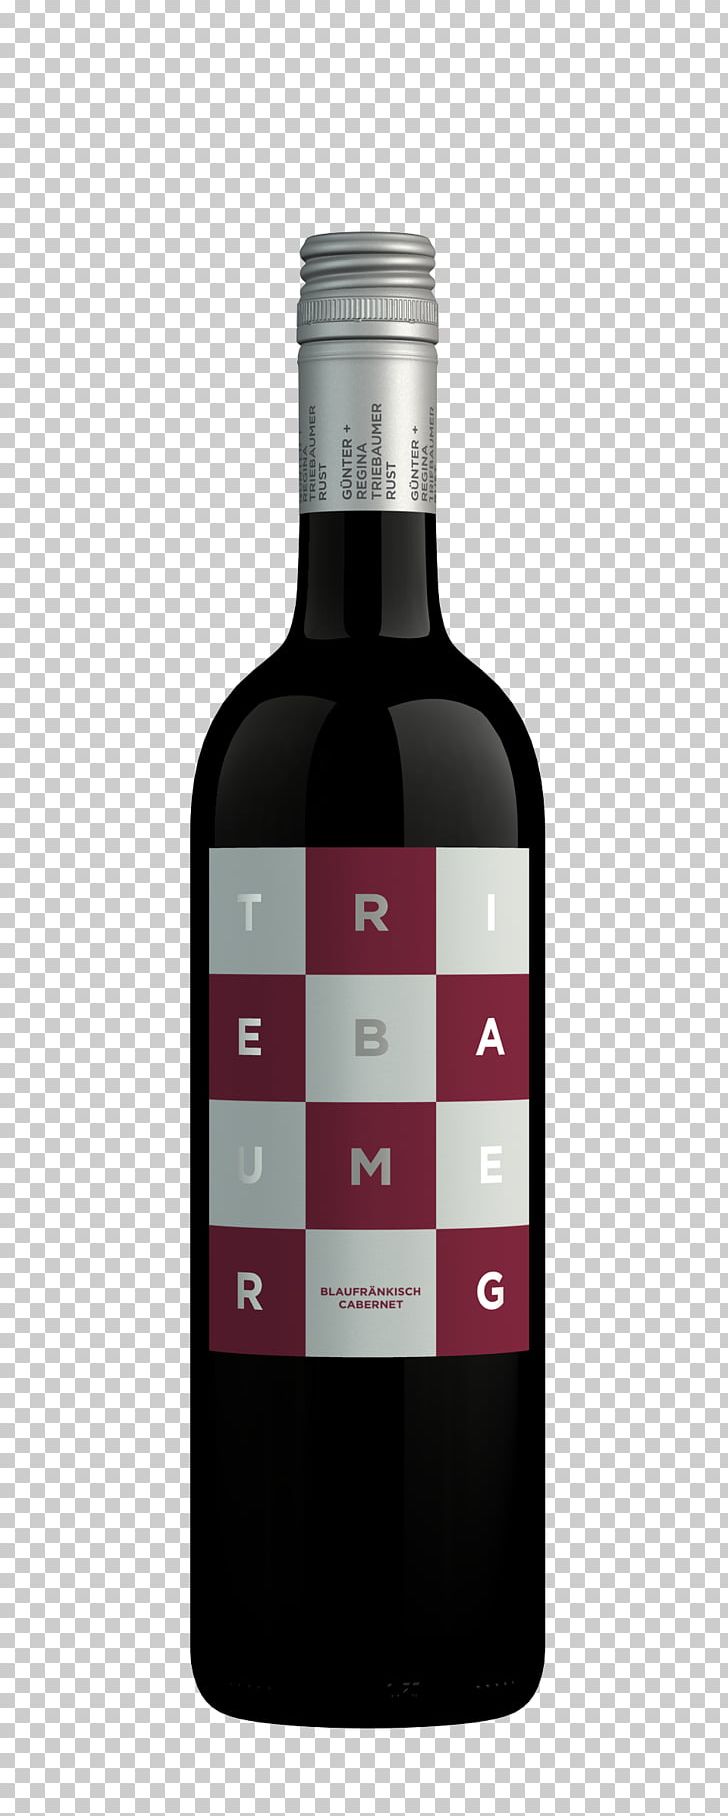 Red Wine G + R Triebaumer GmbH Cabernet Sauvignon Blaufränkisch PNG, Clipart, Bottle, Cabernet, Cabernet Franc, Cabernet Sauvignon, Cuvee Free PNG Download